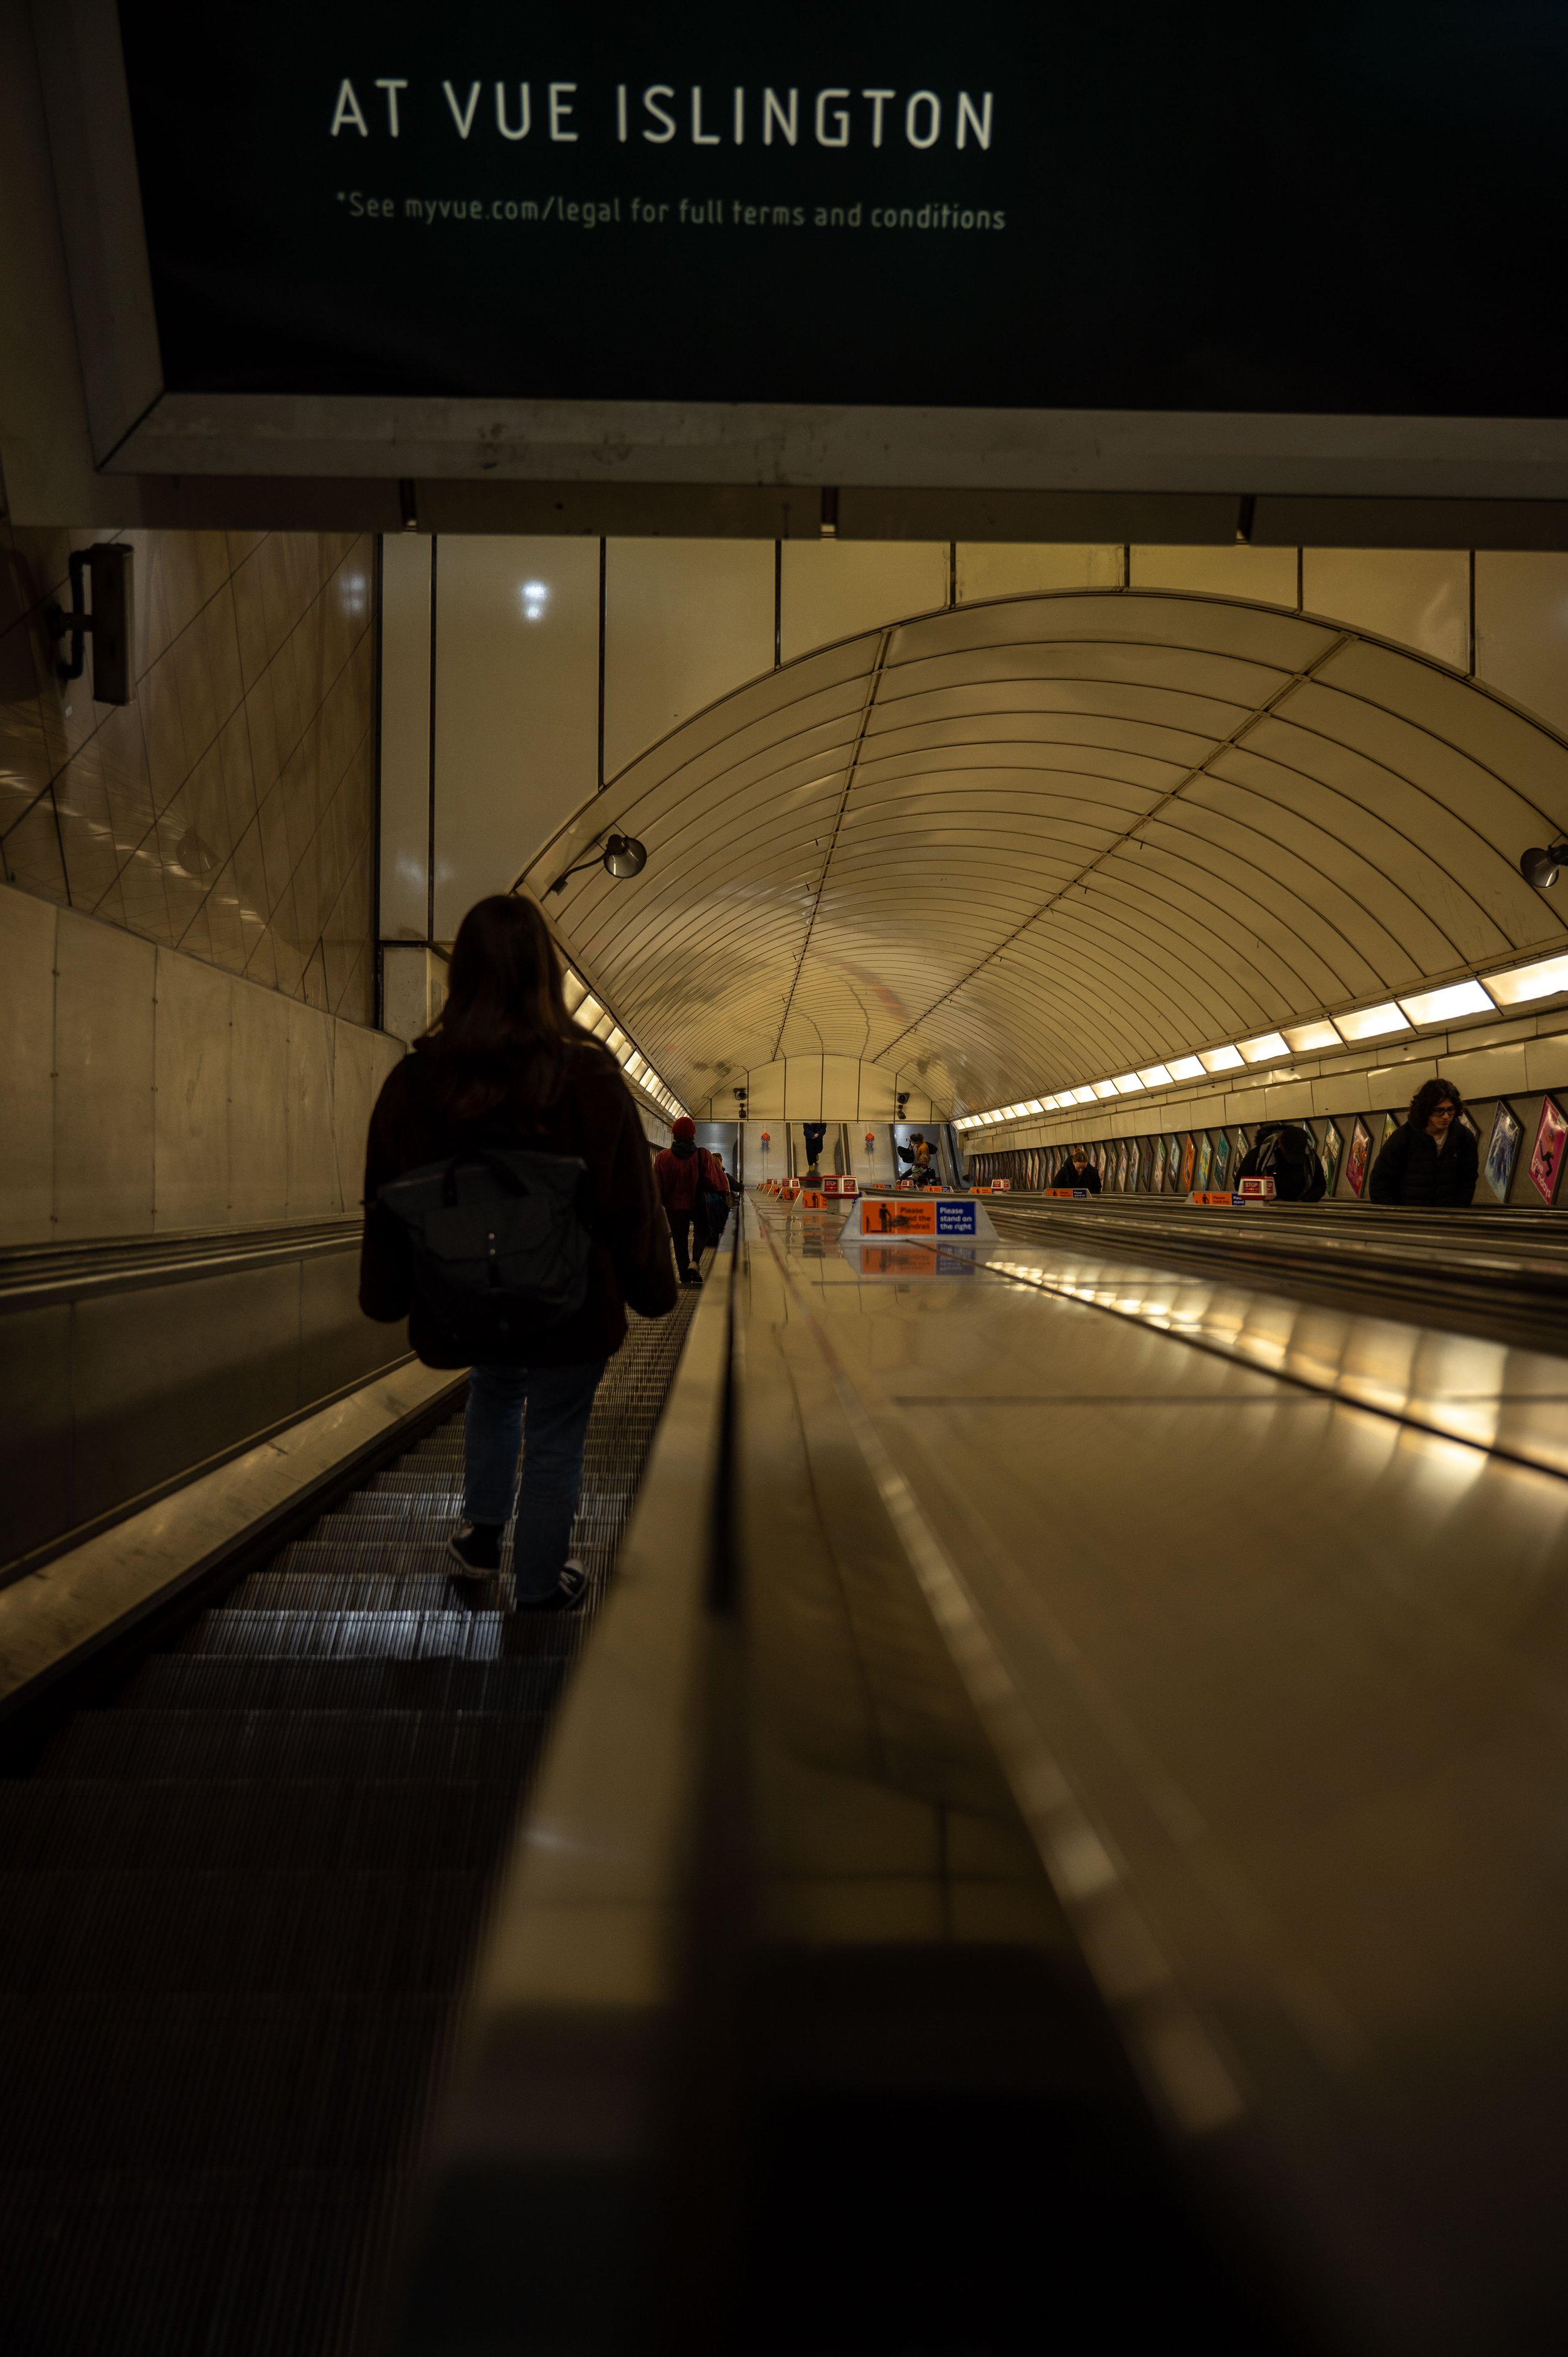 Fotos aus der Londoner U-Bahn Tube zeigen das Leben der Engländer hautnah (2)